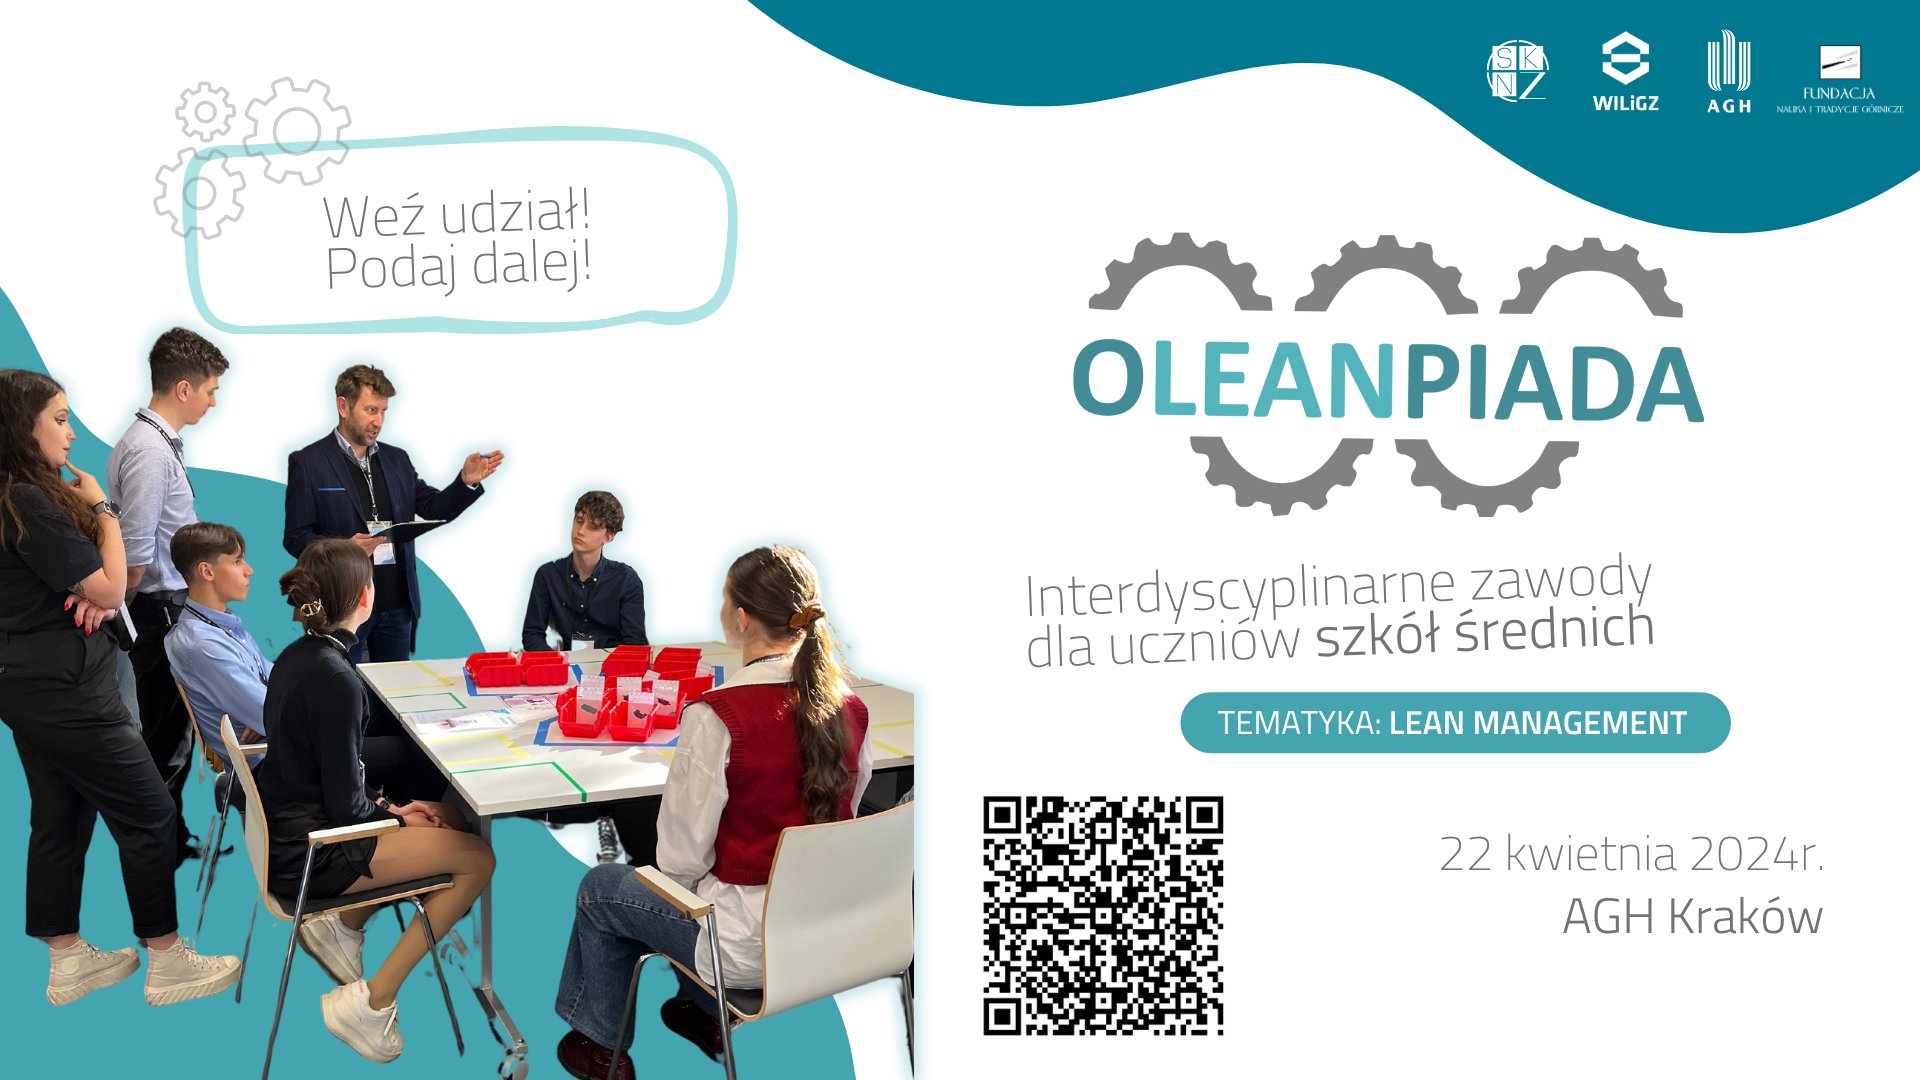 Na zdjęciu widać baner reklamowy Oleanpiady. Po lewej stronie zdjęcia widoczni są licealiście po prawej napis: Oleainpiada.